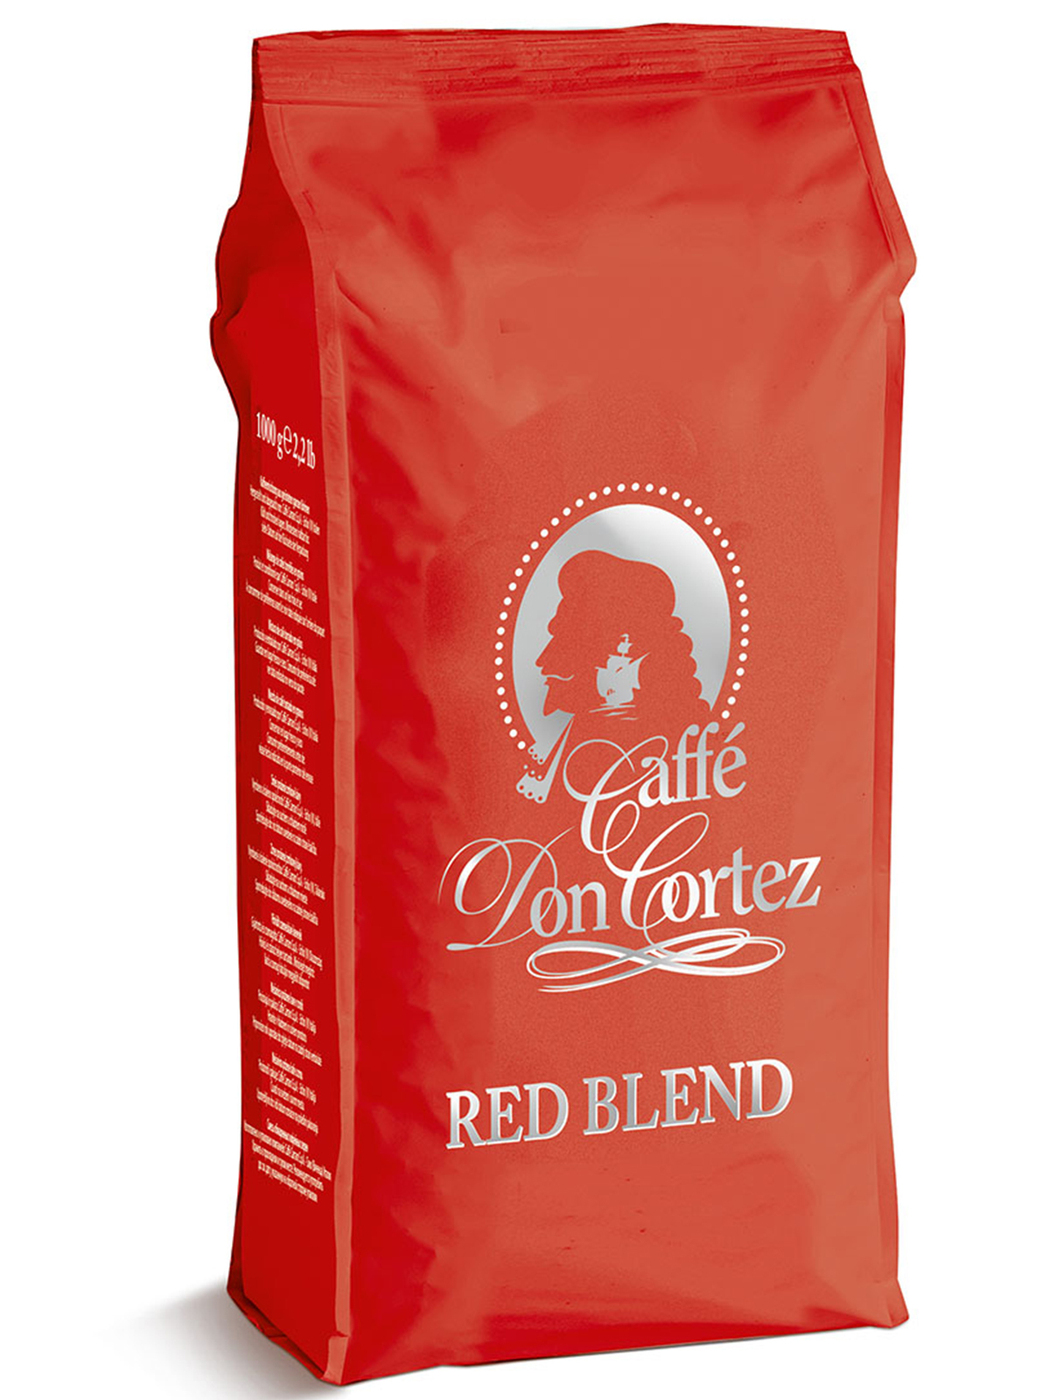 Кофе 1 кг купить недорого. Кофе в зернах Carraro Arabica. Caffe don Cortez Red Blend. Don Cortez кофе Carraro. Carraro кофе упаковка.